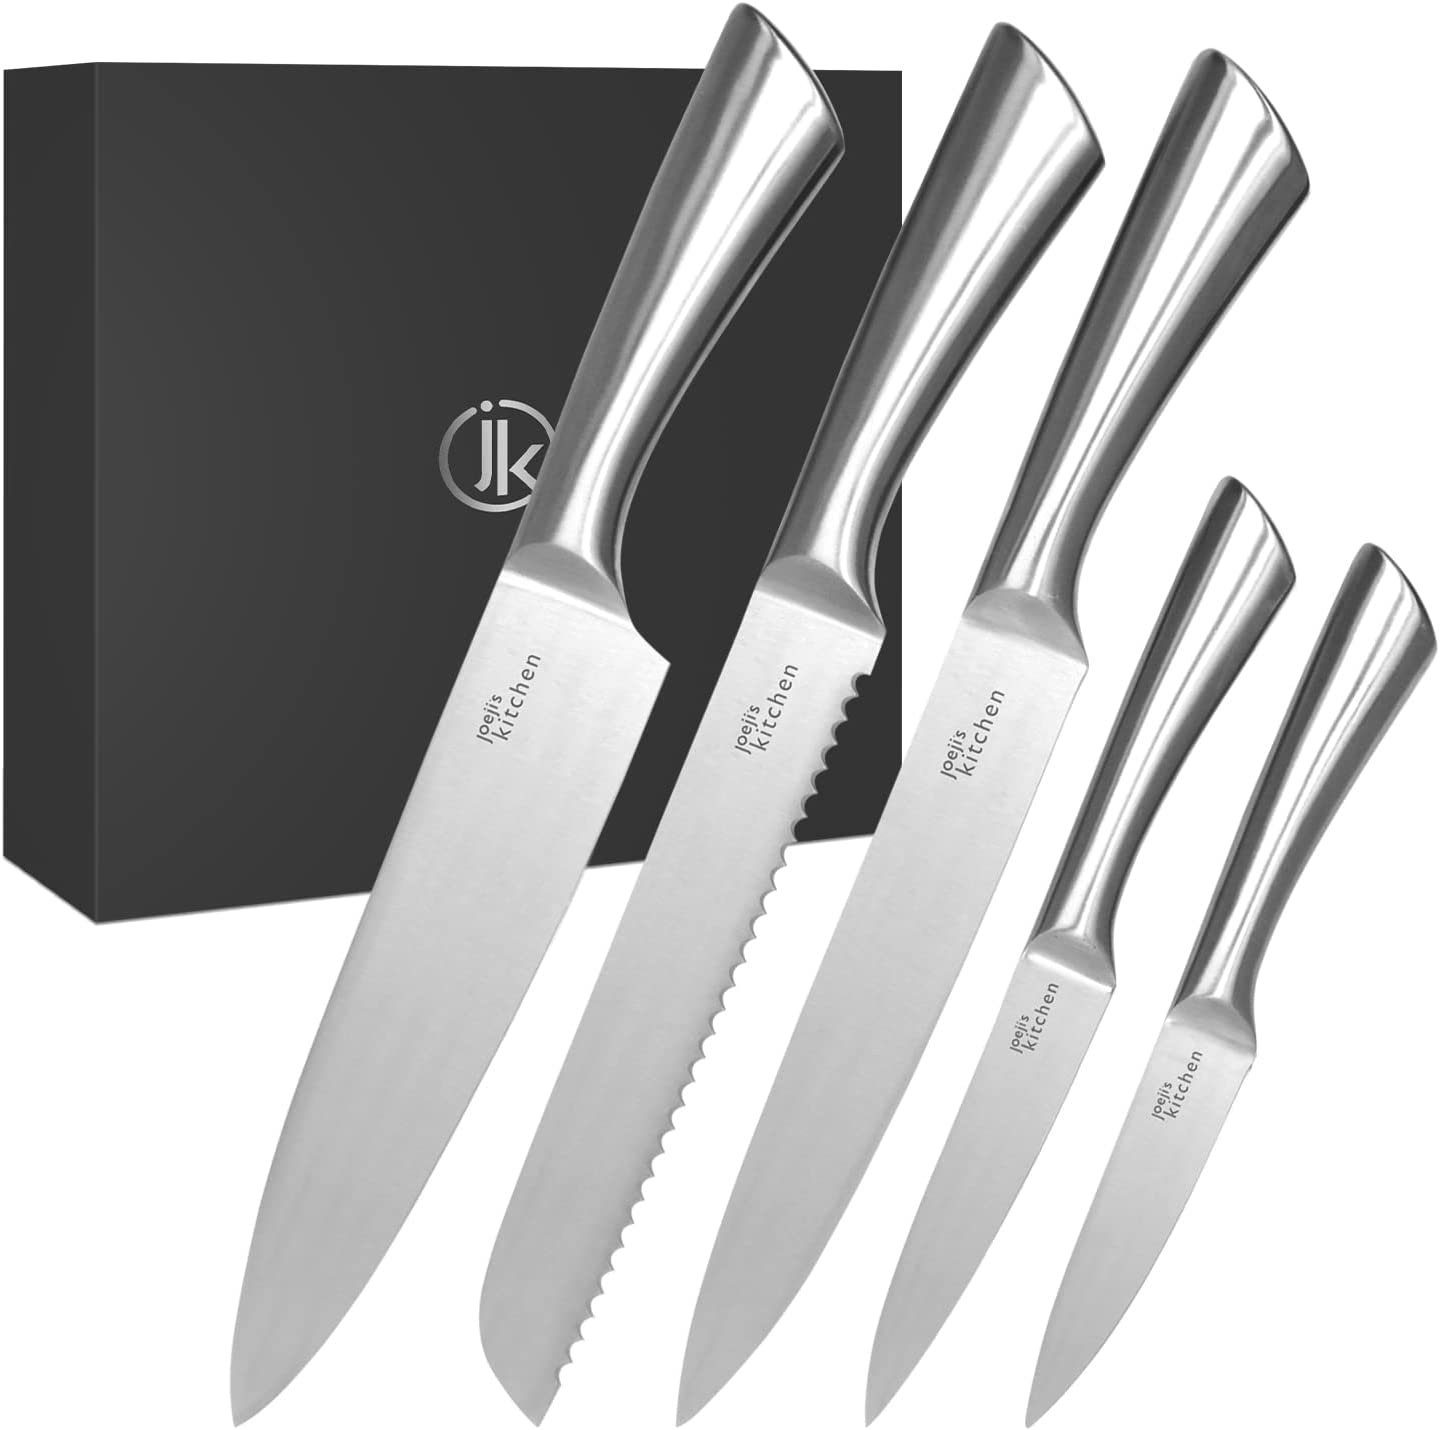 JOEJI'S KITCHEN Universalküchenmesser 5-in-1 Messerset aus Edelstahl -  Scharfe Küchenmesser Set